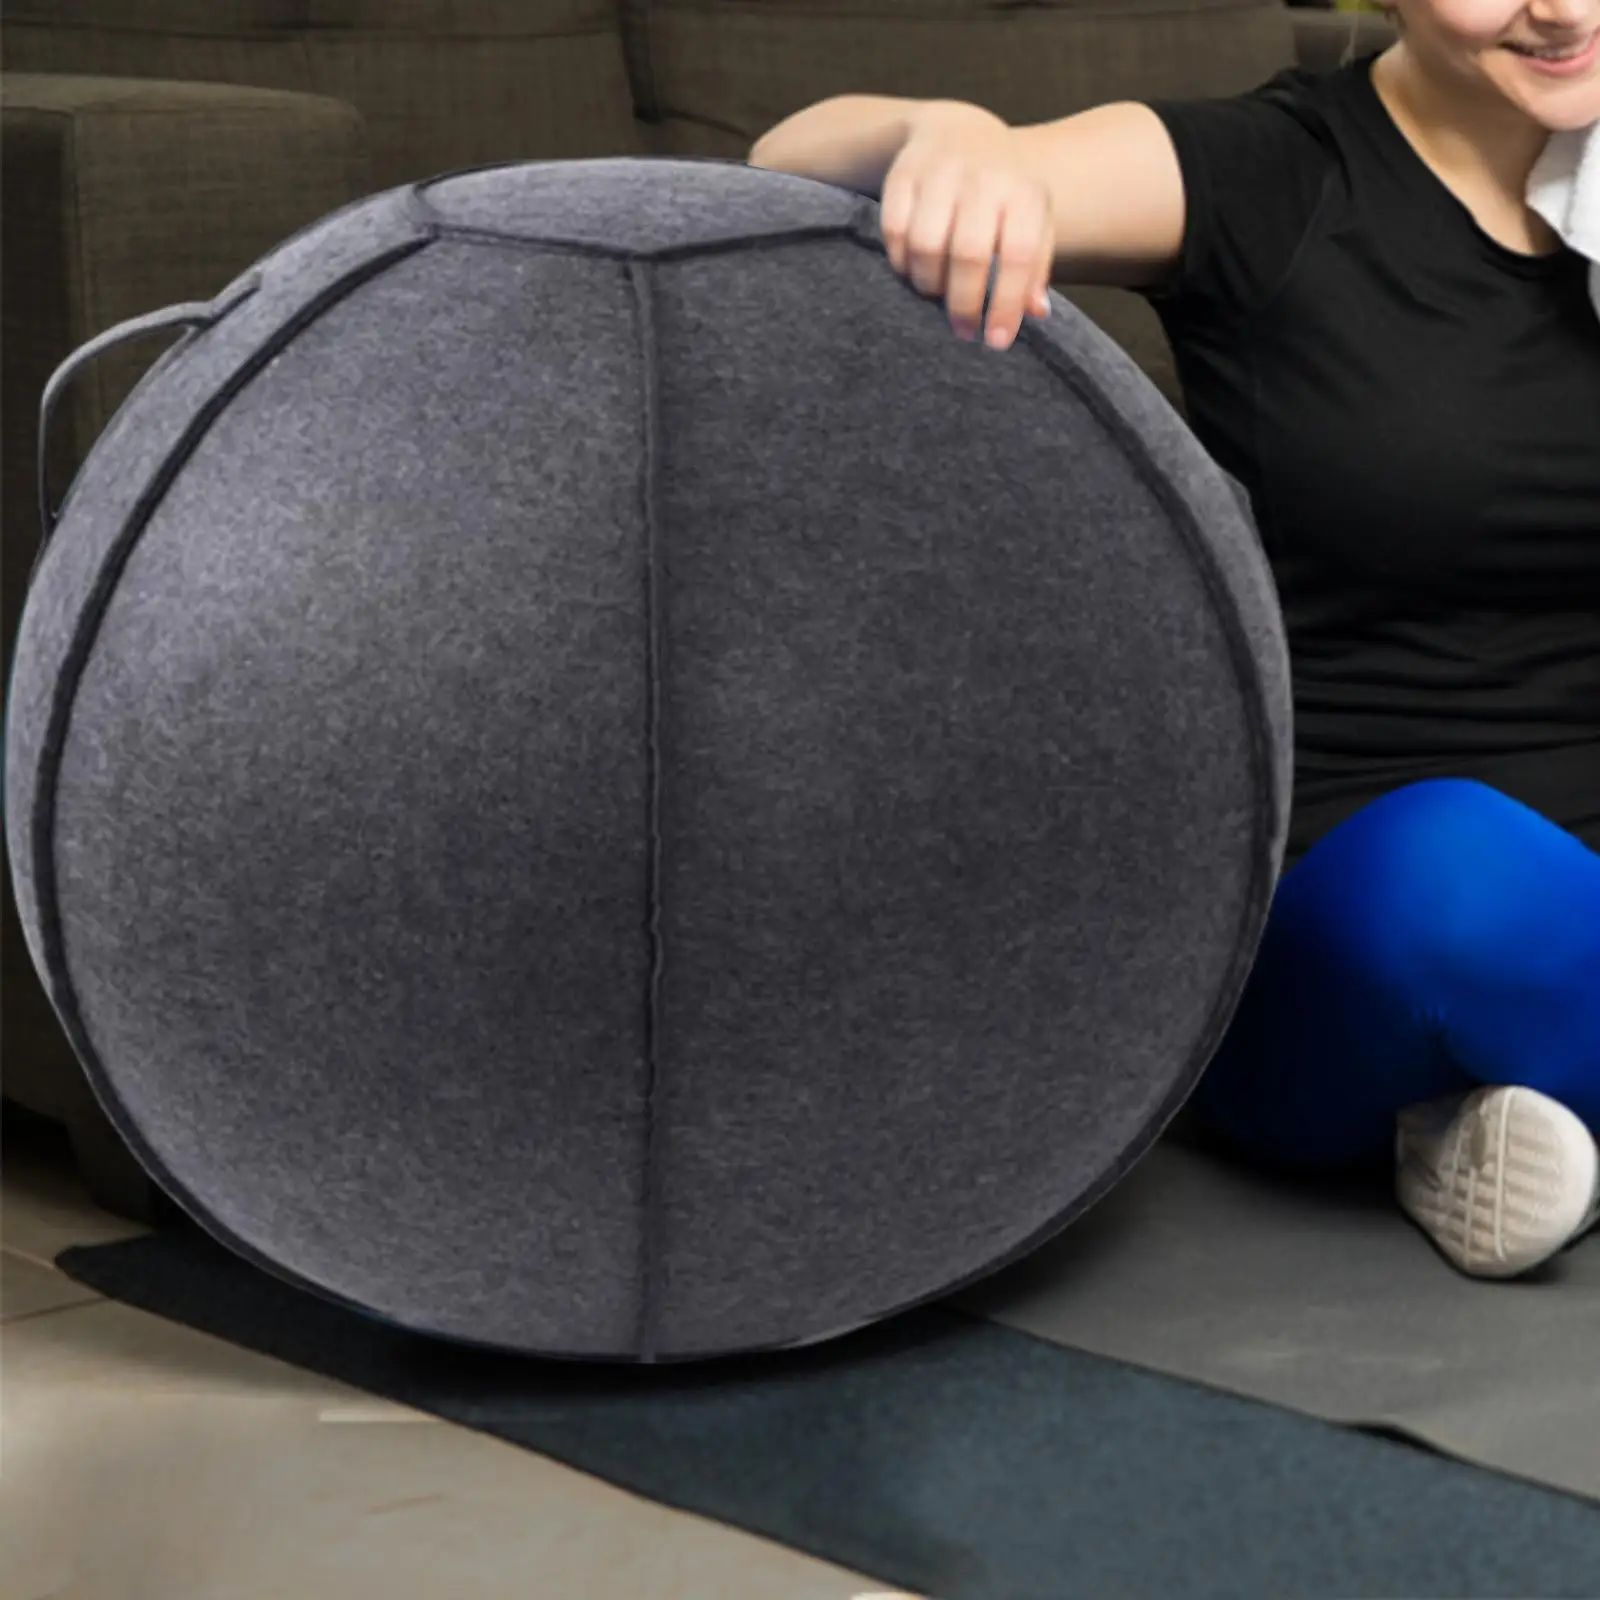 Dust Proof Ball Chair Cover Handle Protector 26`` Felt Gymnastics Pilates